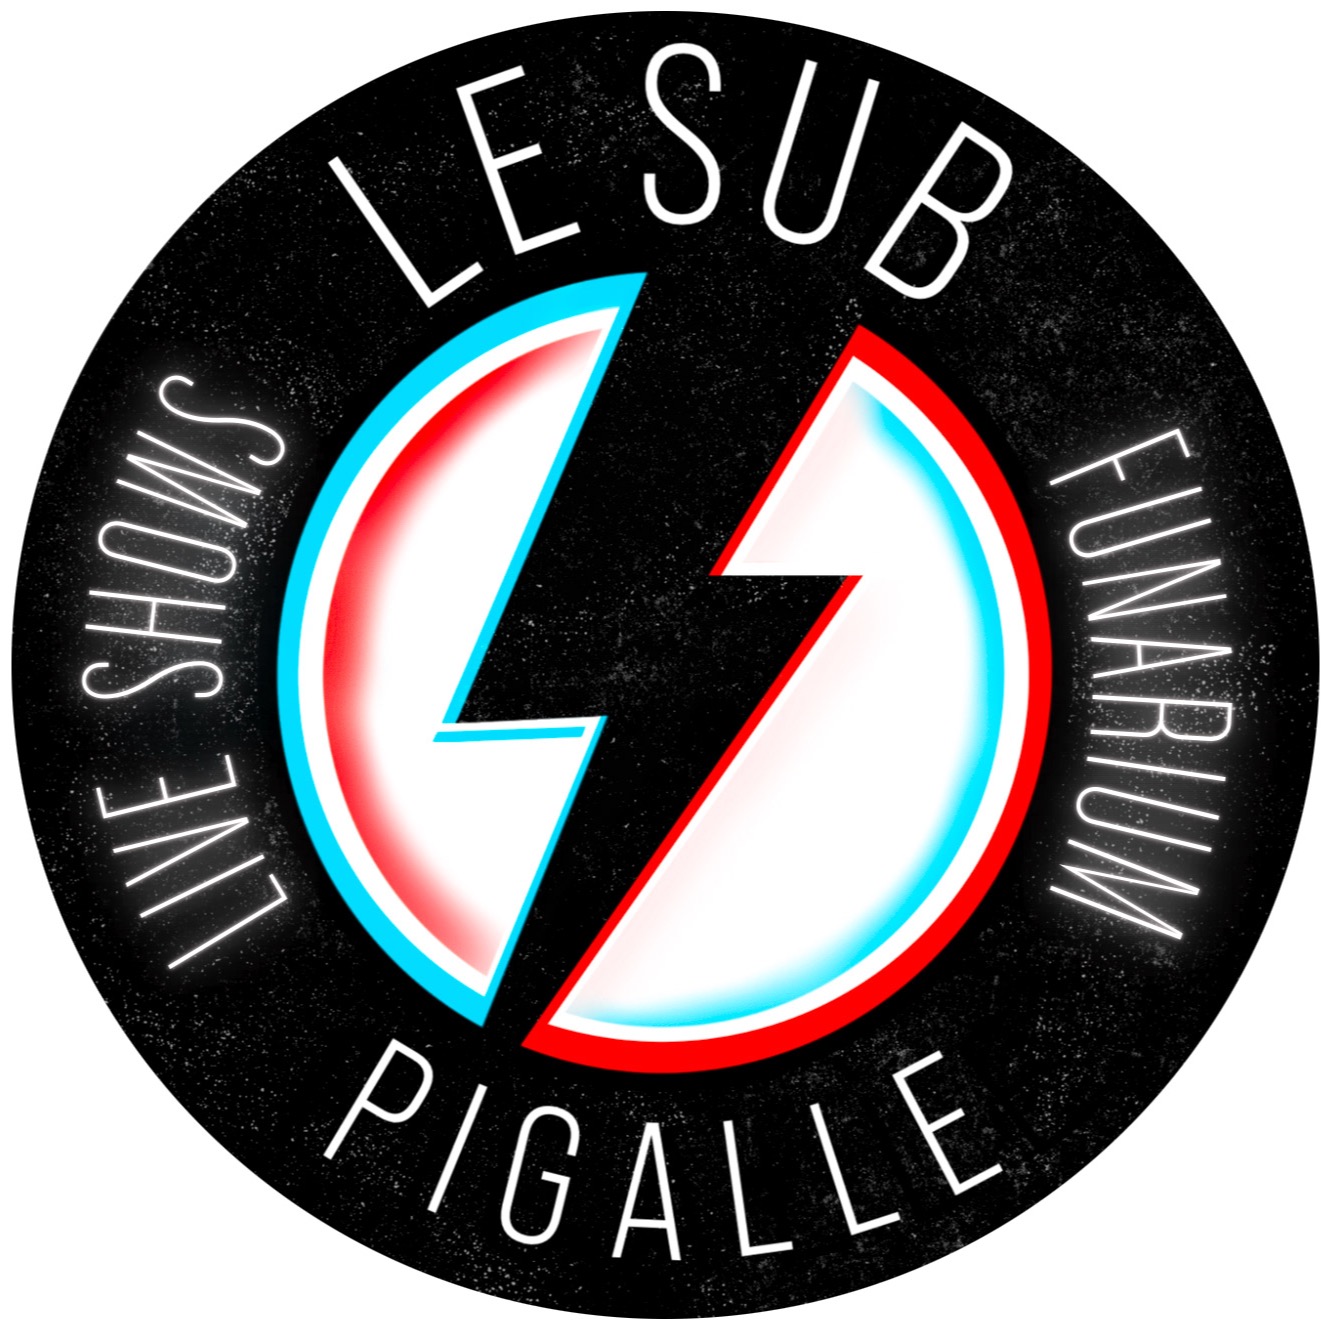 Le Sub Pigalle Logo